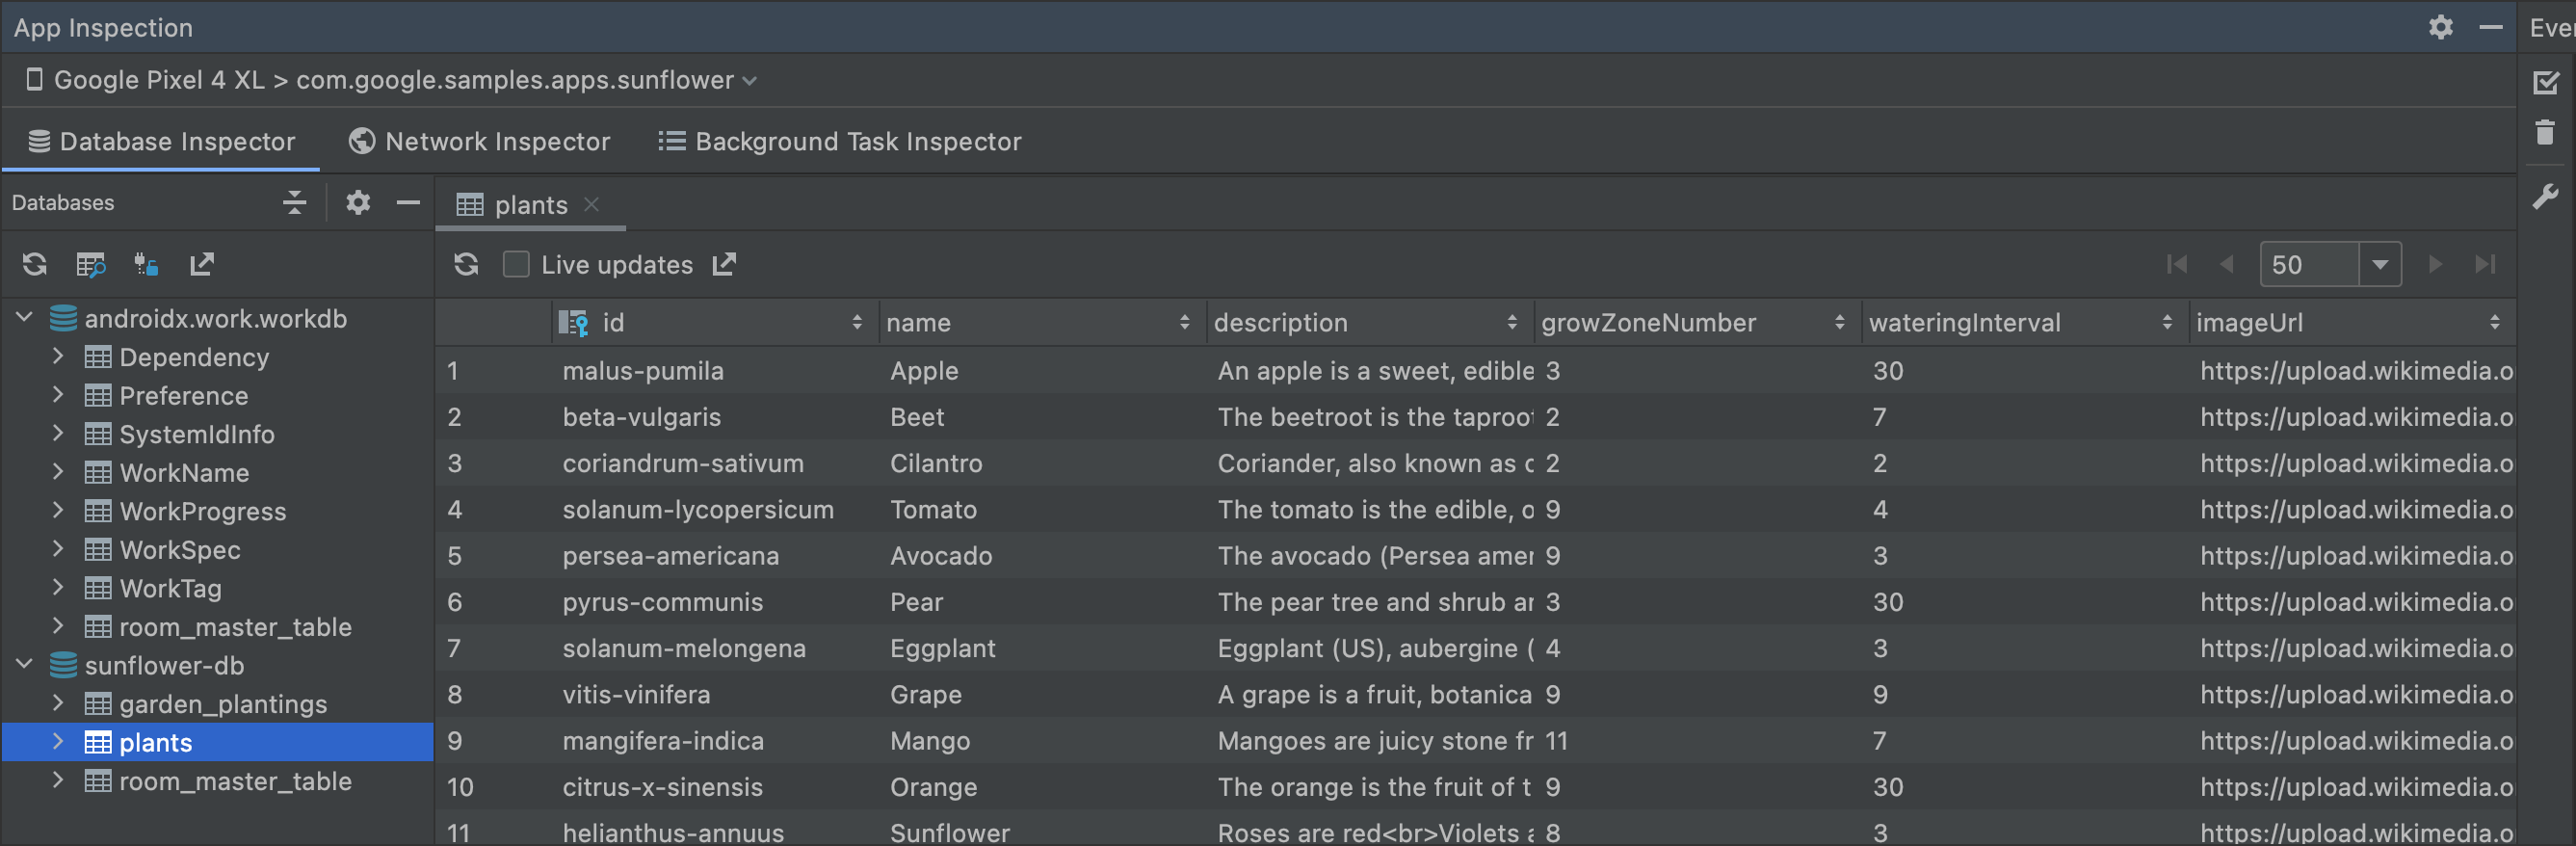 Captura de tela da janela do Database Inspector.